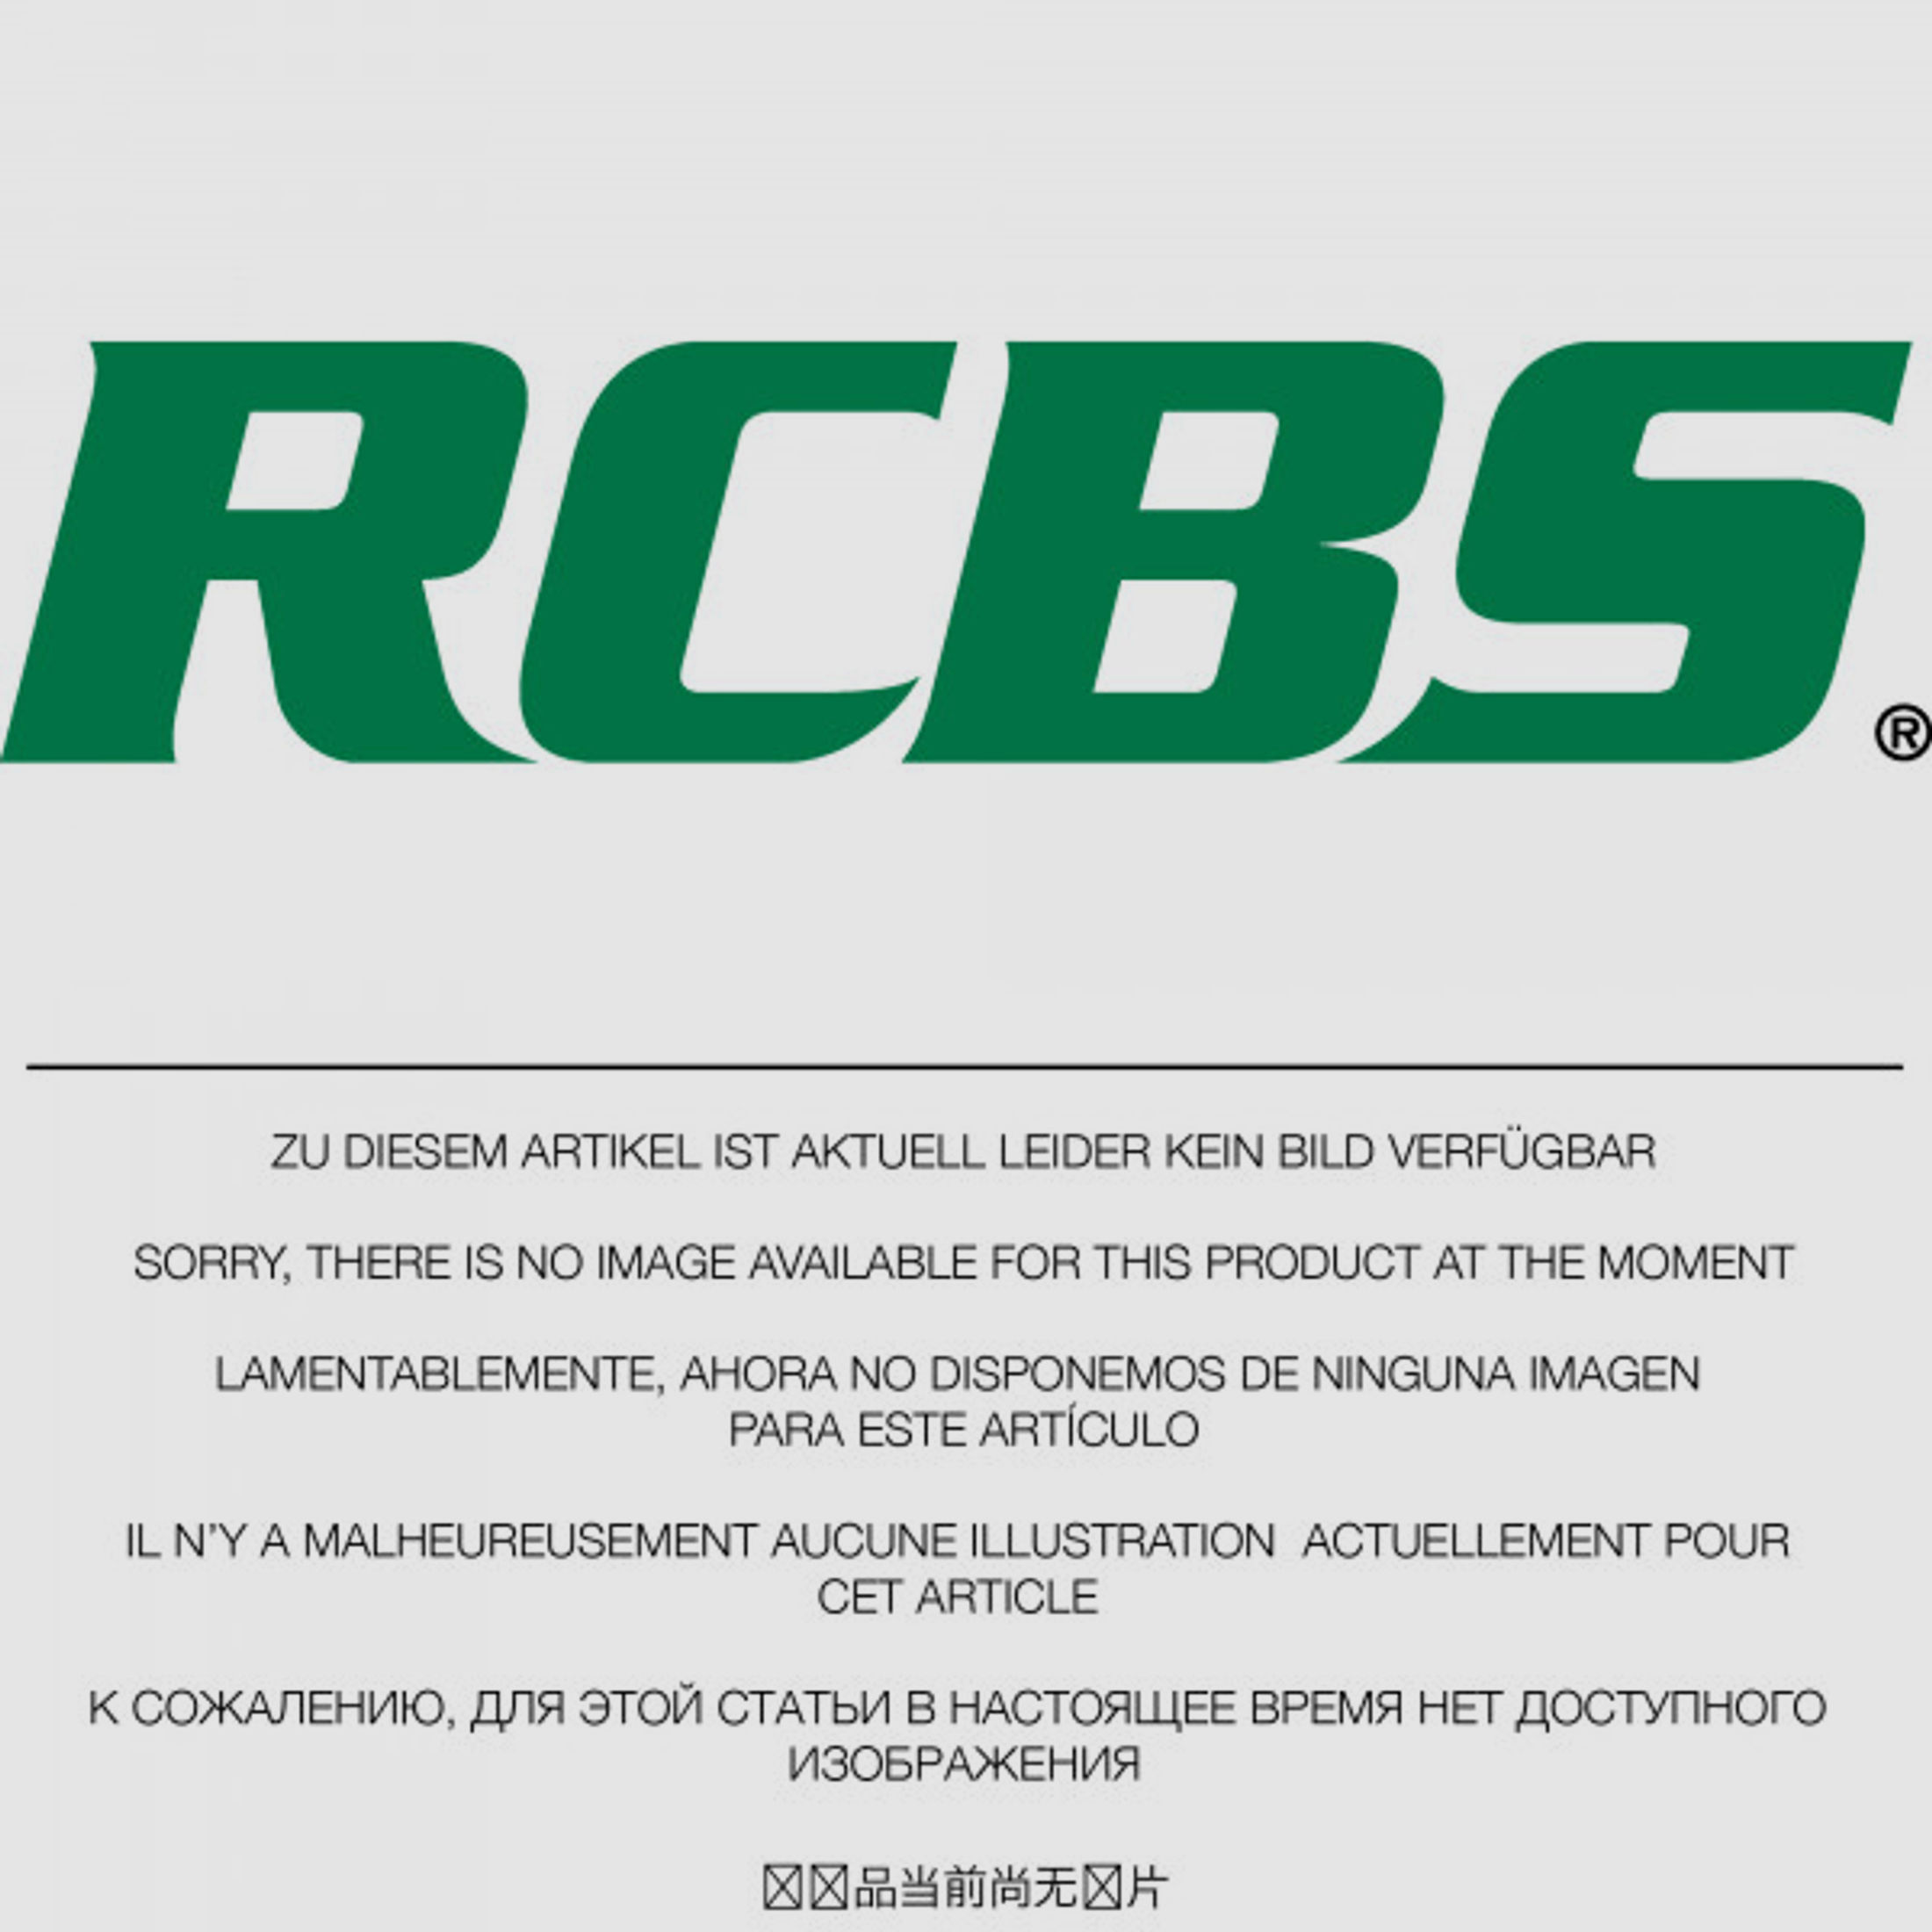 RCBS Lube-A-Matic Top Punch Geschoss Setzstempel Nr. 401 #82521